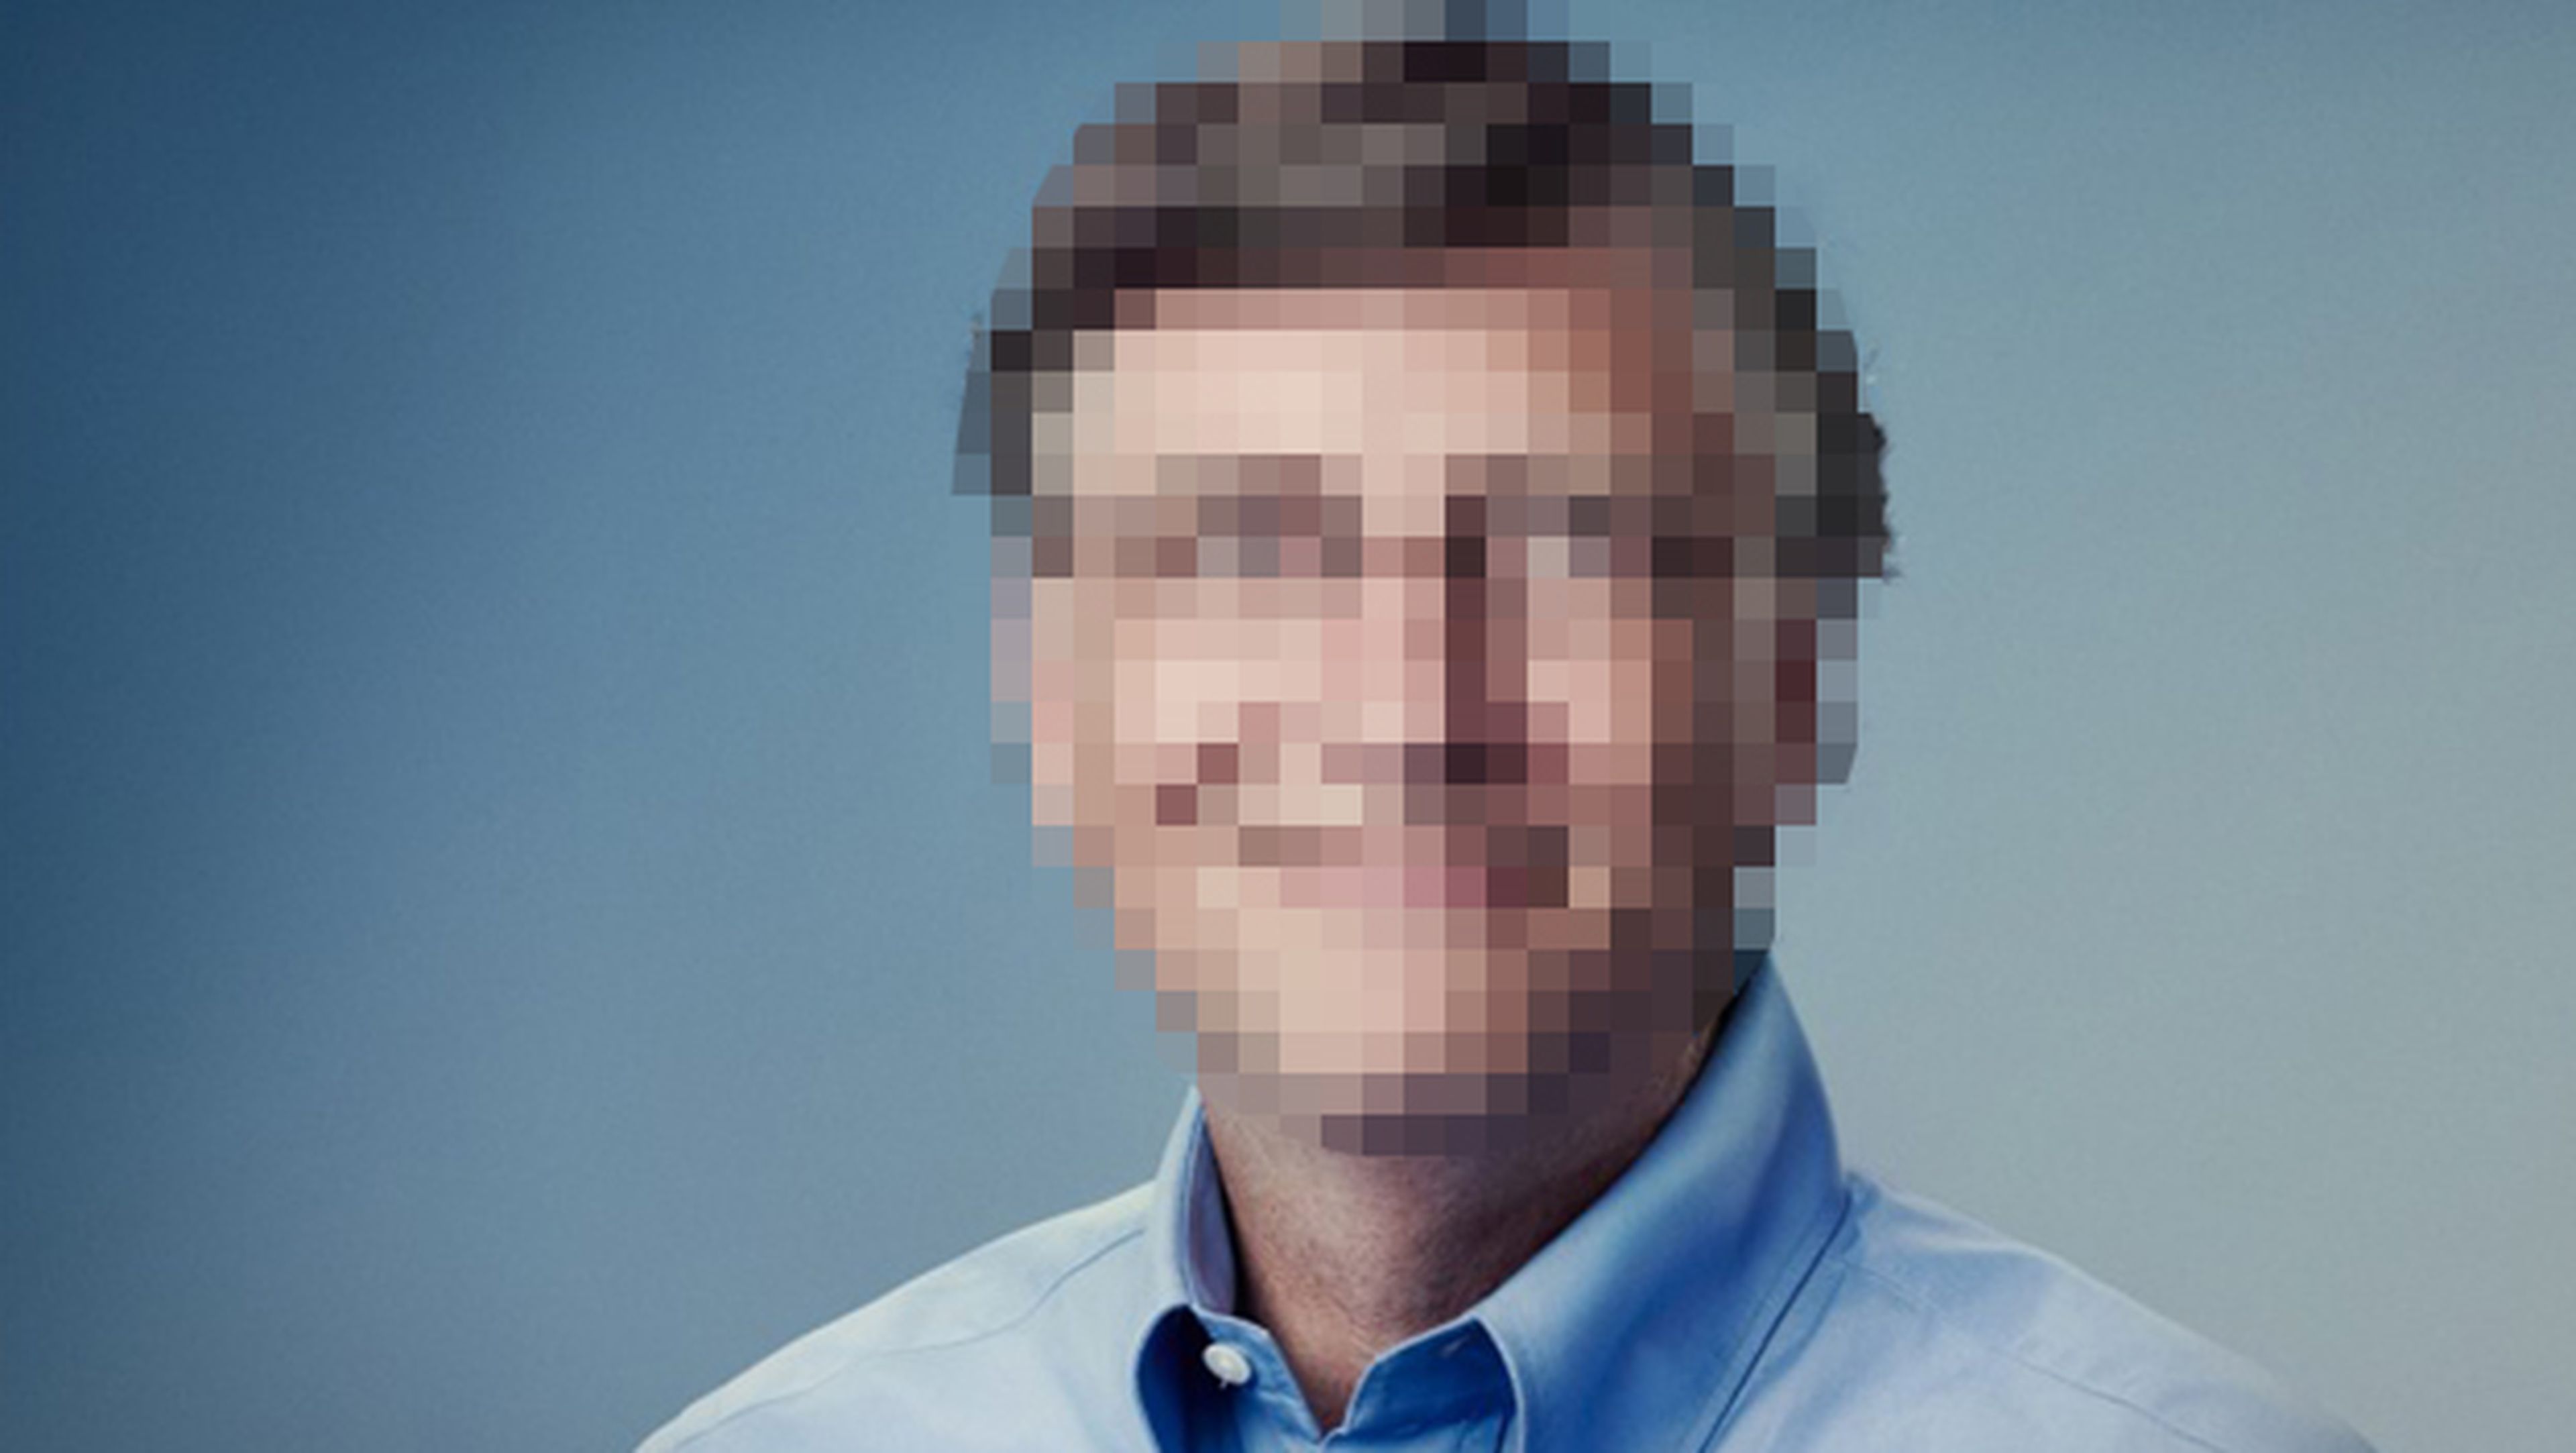 Inteligencia artificial revela rostros y números pixelados